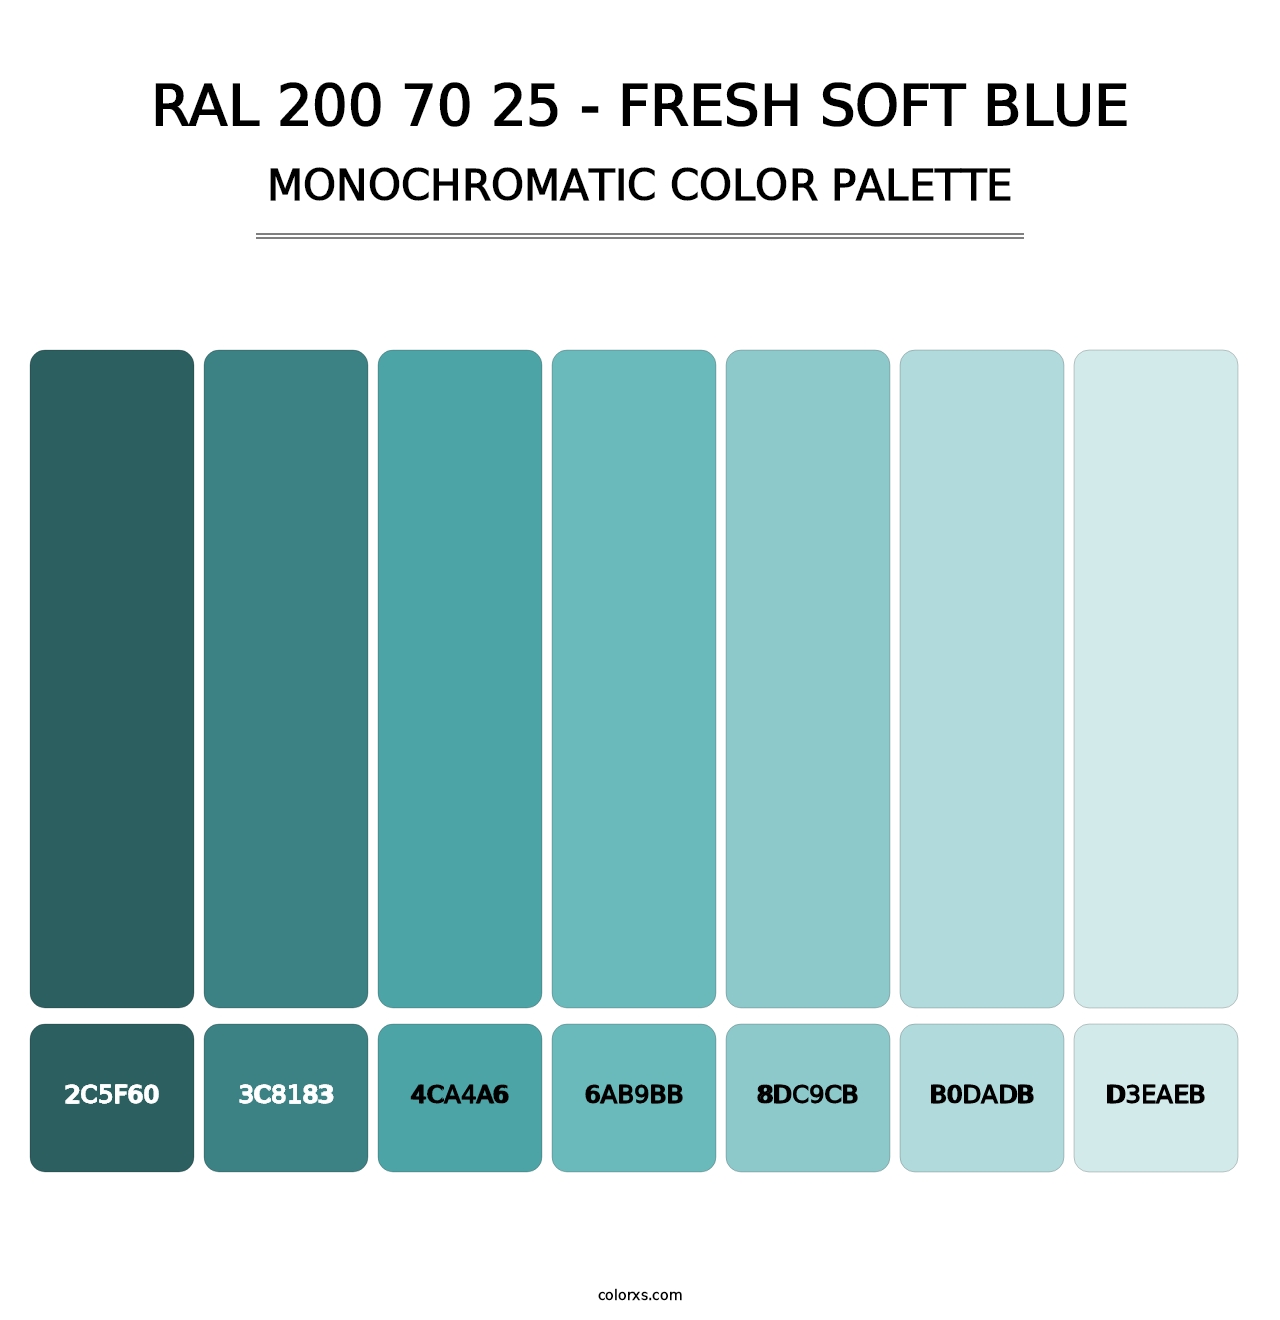 RAL 200 70 25 - Fresh Soft Blue - Monochromatic Color Palette